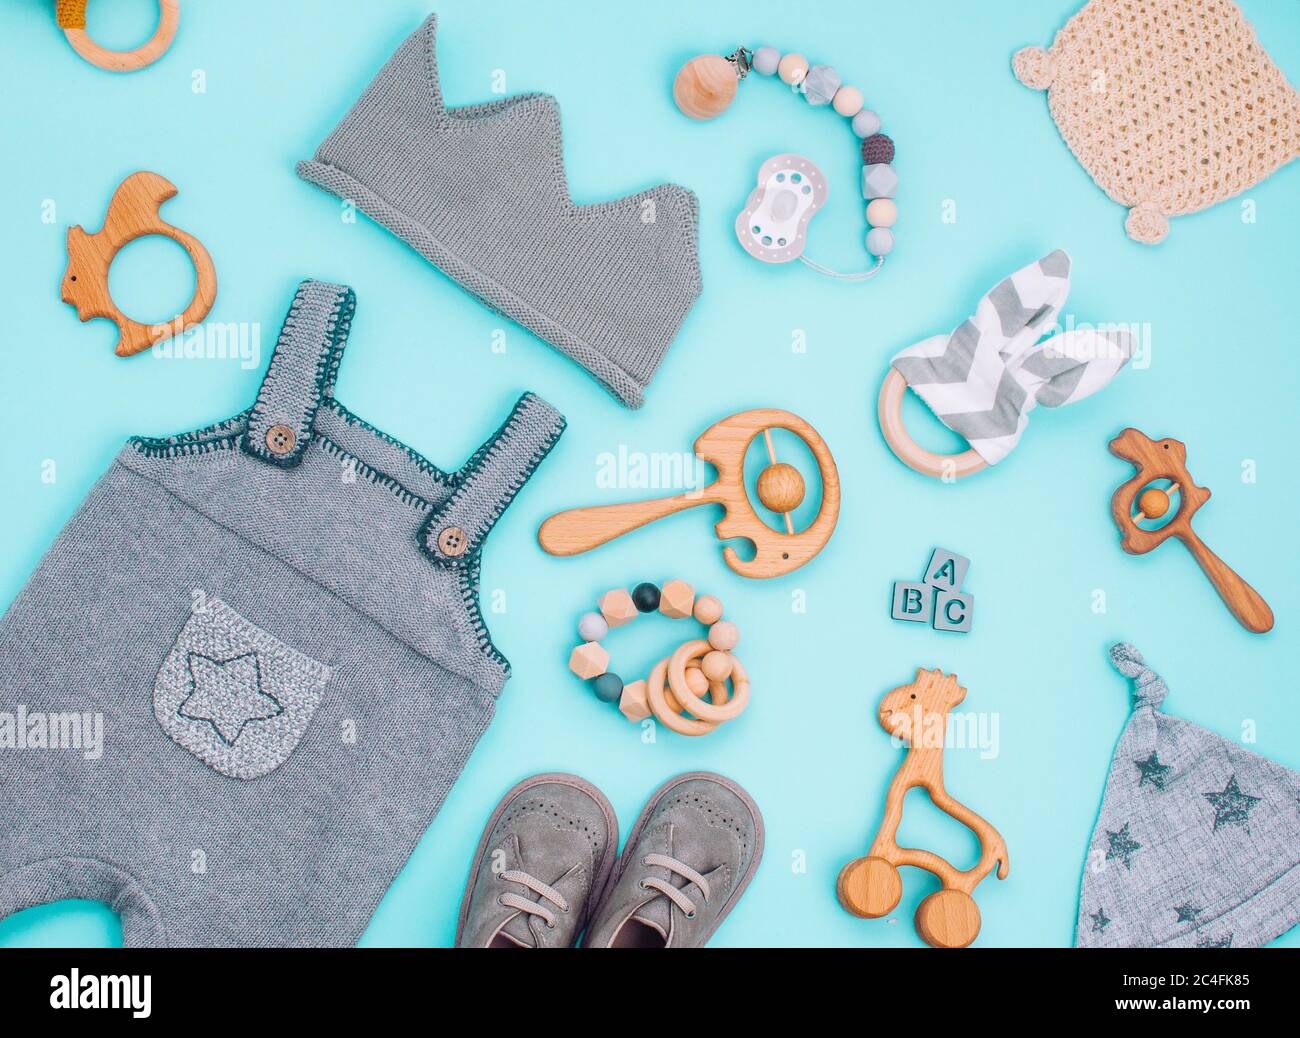 Concetto di accessori per bambini. Vestiti per bambini e giocattoli in legno su sfondo azzurro. Vista dall'alto, disposizione piatta. Foto Stock